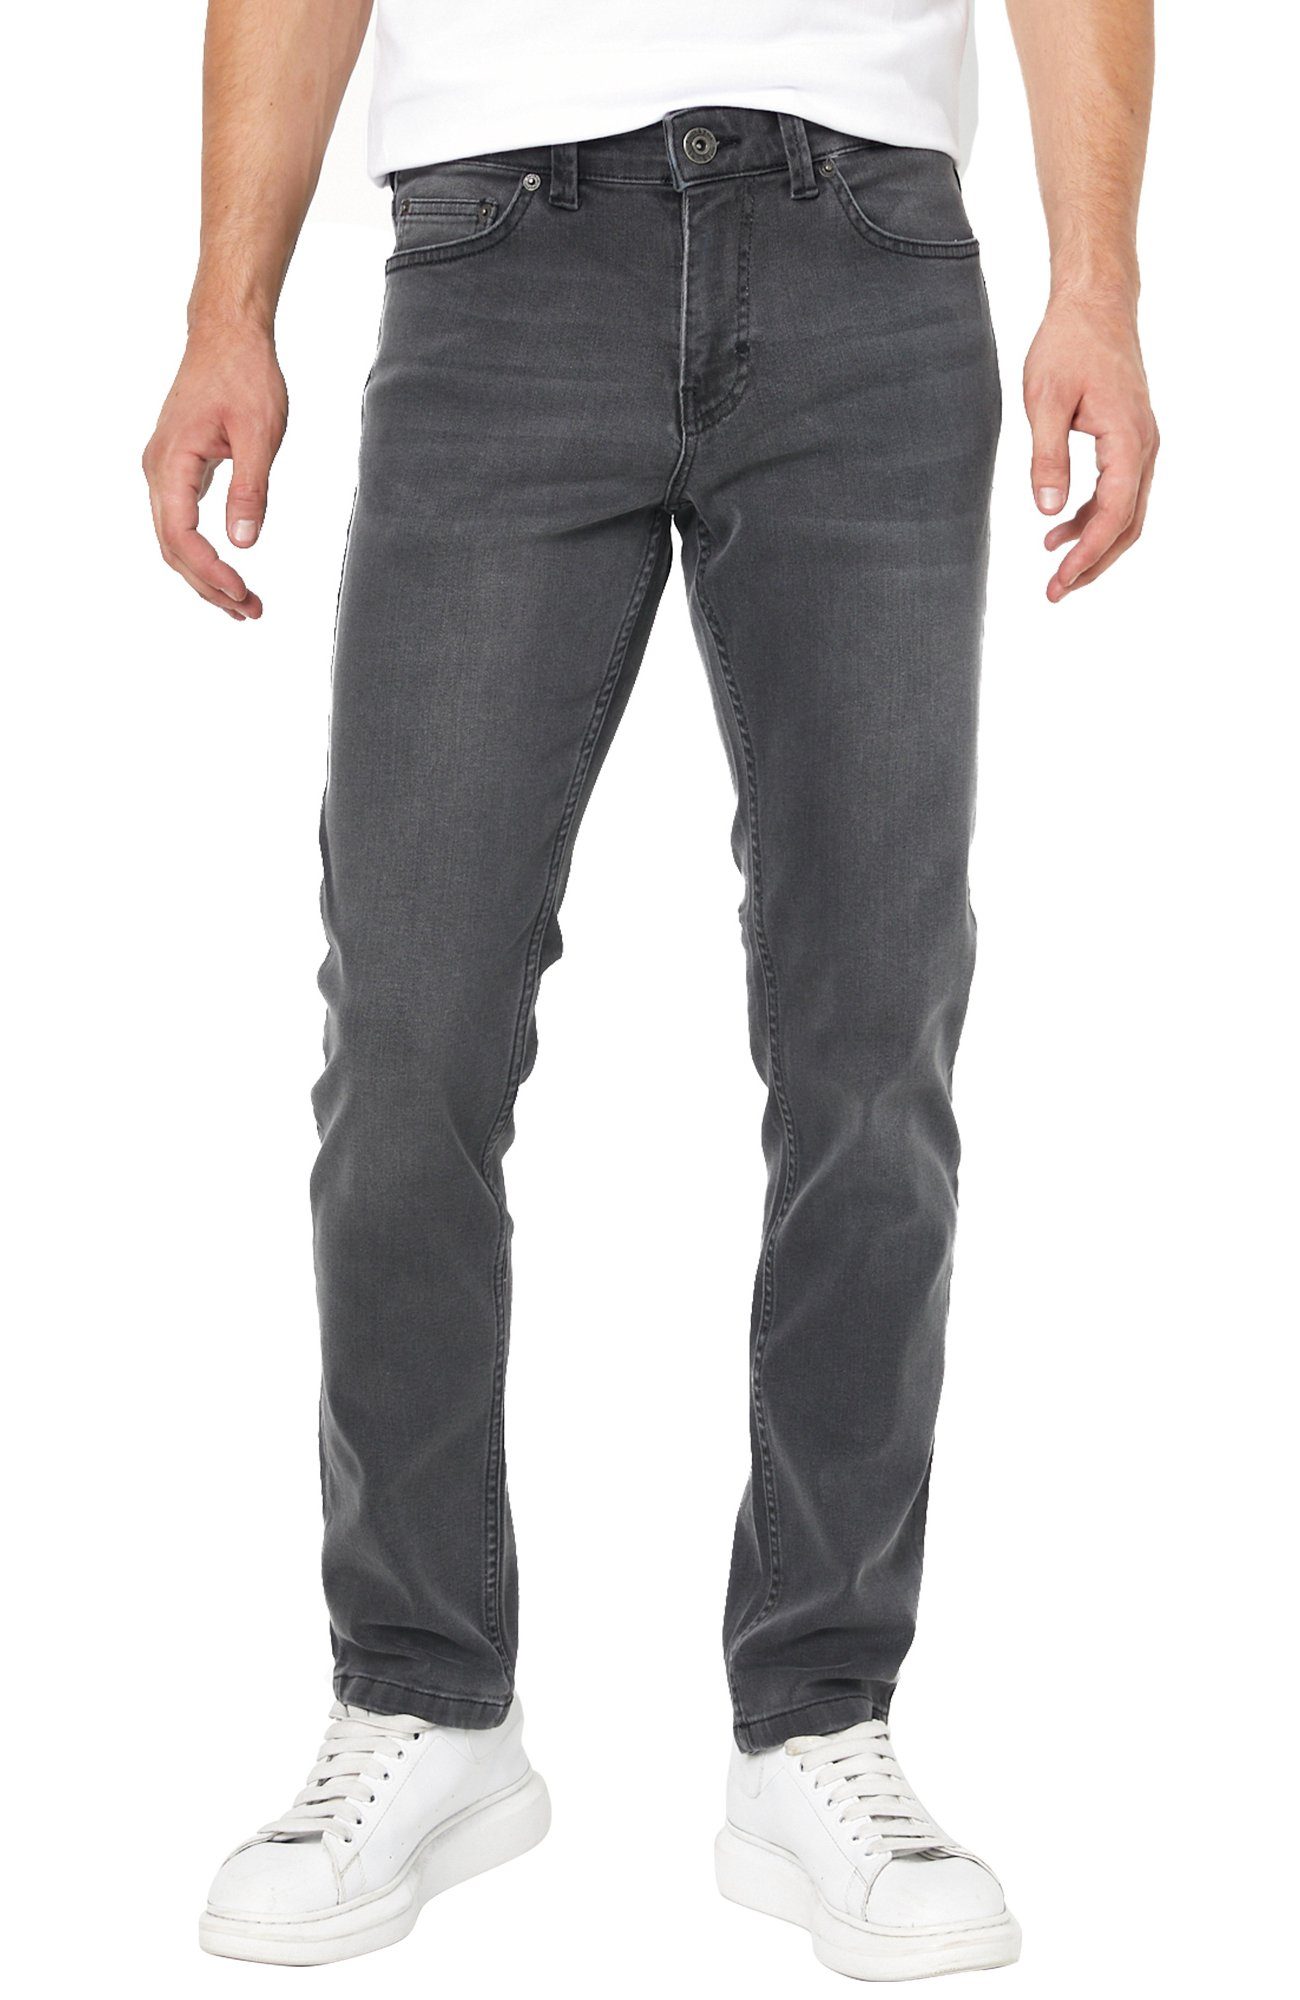 Wrangler Hose Herren Jeans Used Look Denim Freizeithose Greensboro Blau SALE 